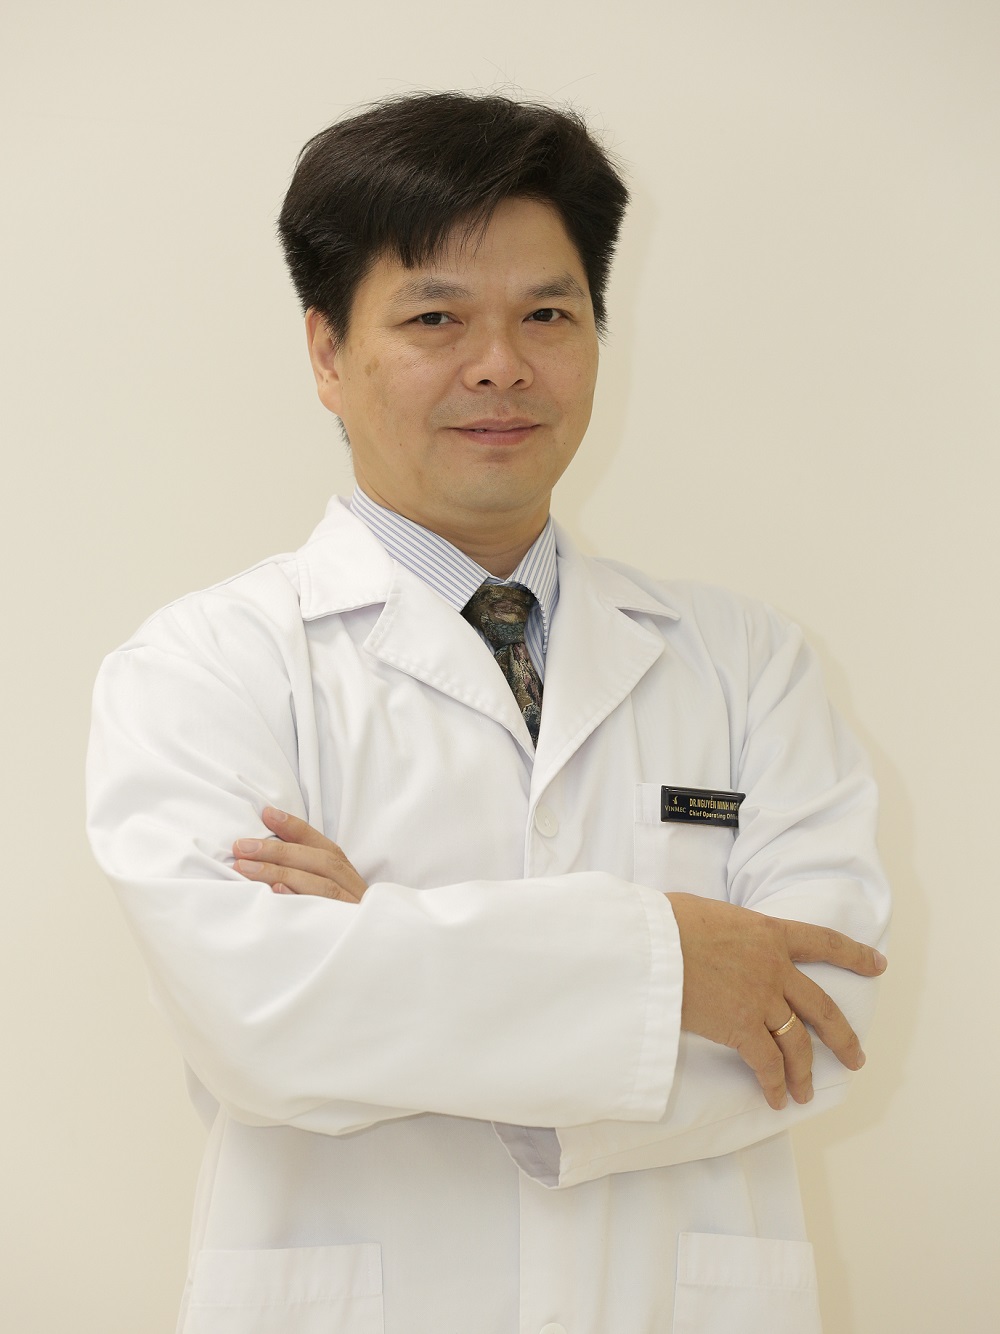 Bác sĩ Nguyễn Minh Ngọc, Quản lý kinh doanh phát triển y tế du lịch, Hệ thống Y tế Vinmec.